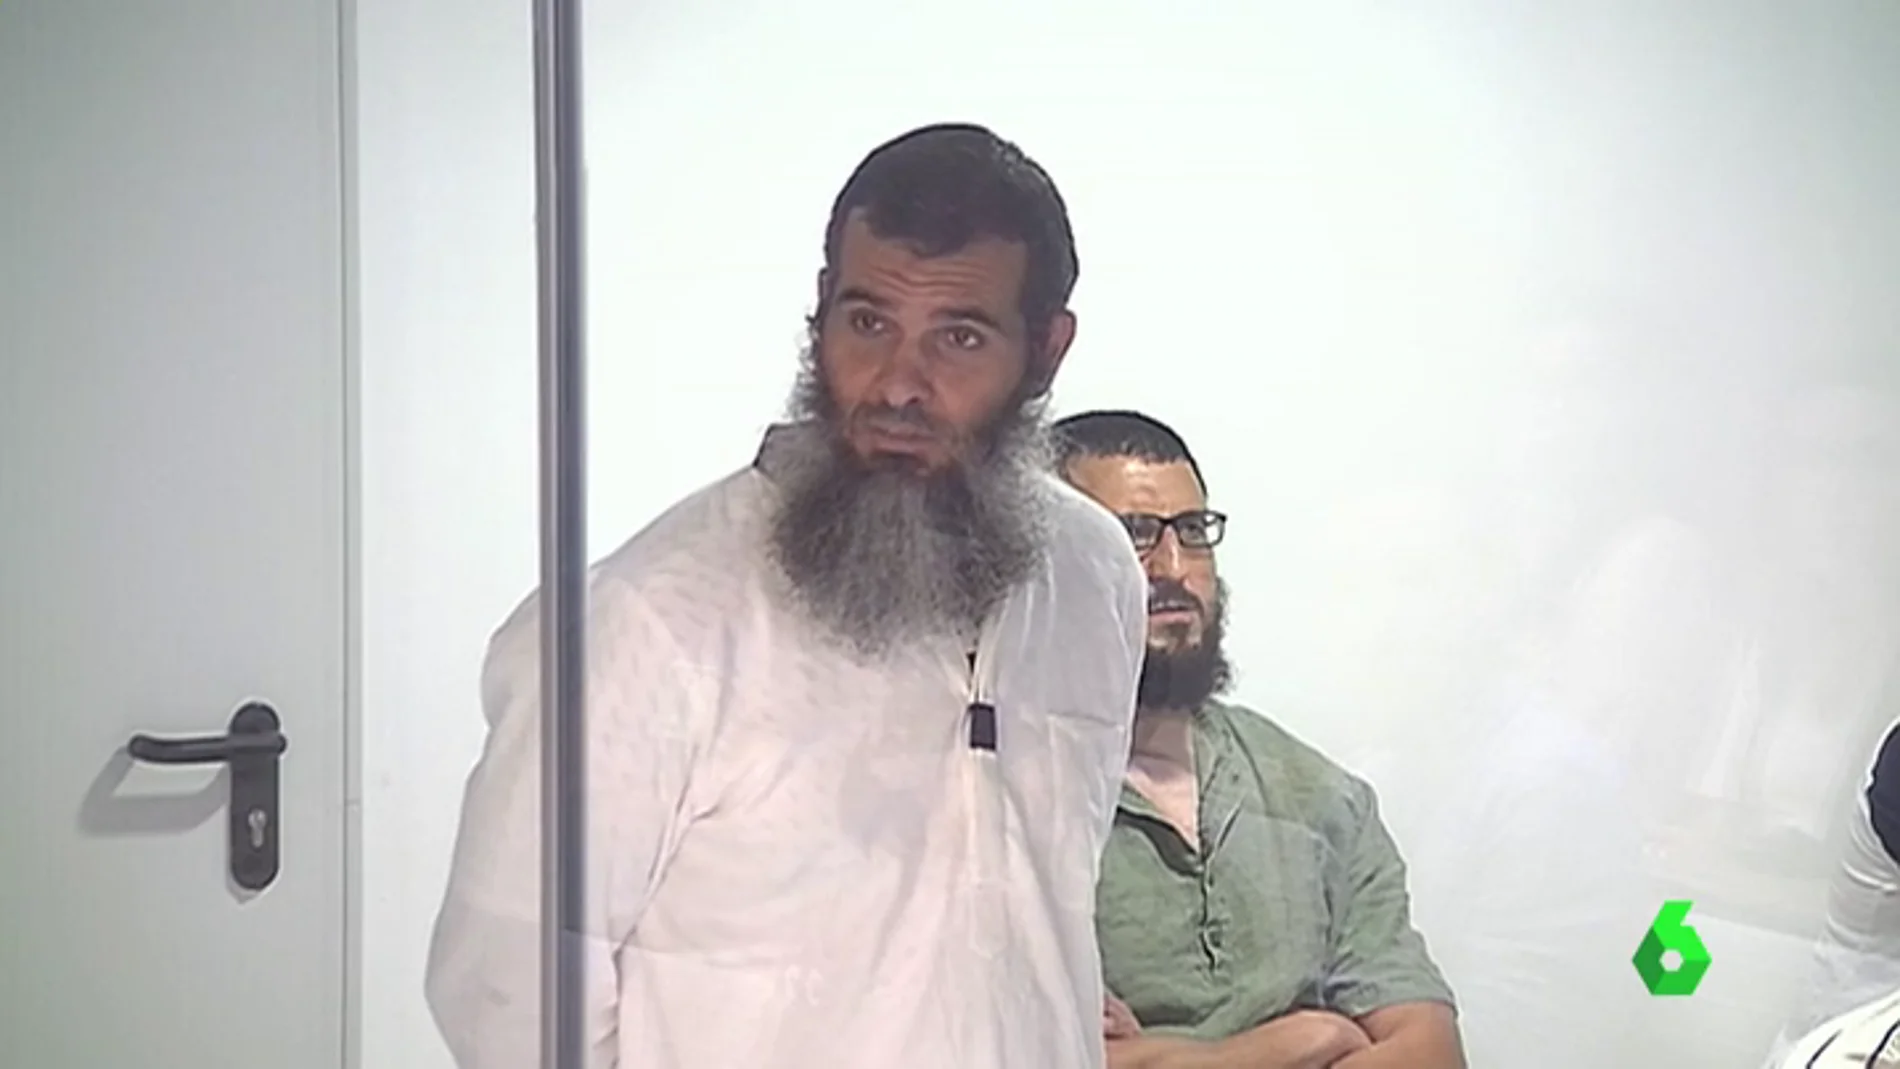 Un líder yihadista detenido en España reconoce por primera vez a Daesh y Al Qaeda como organizaciones terroristas